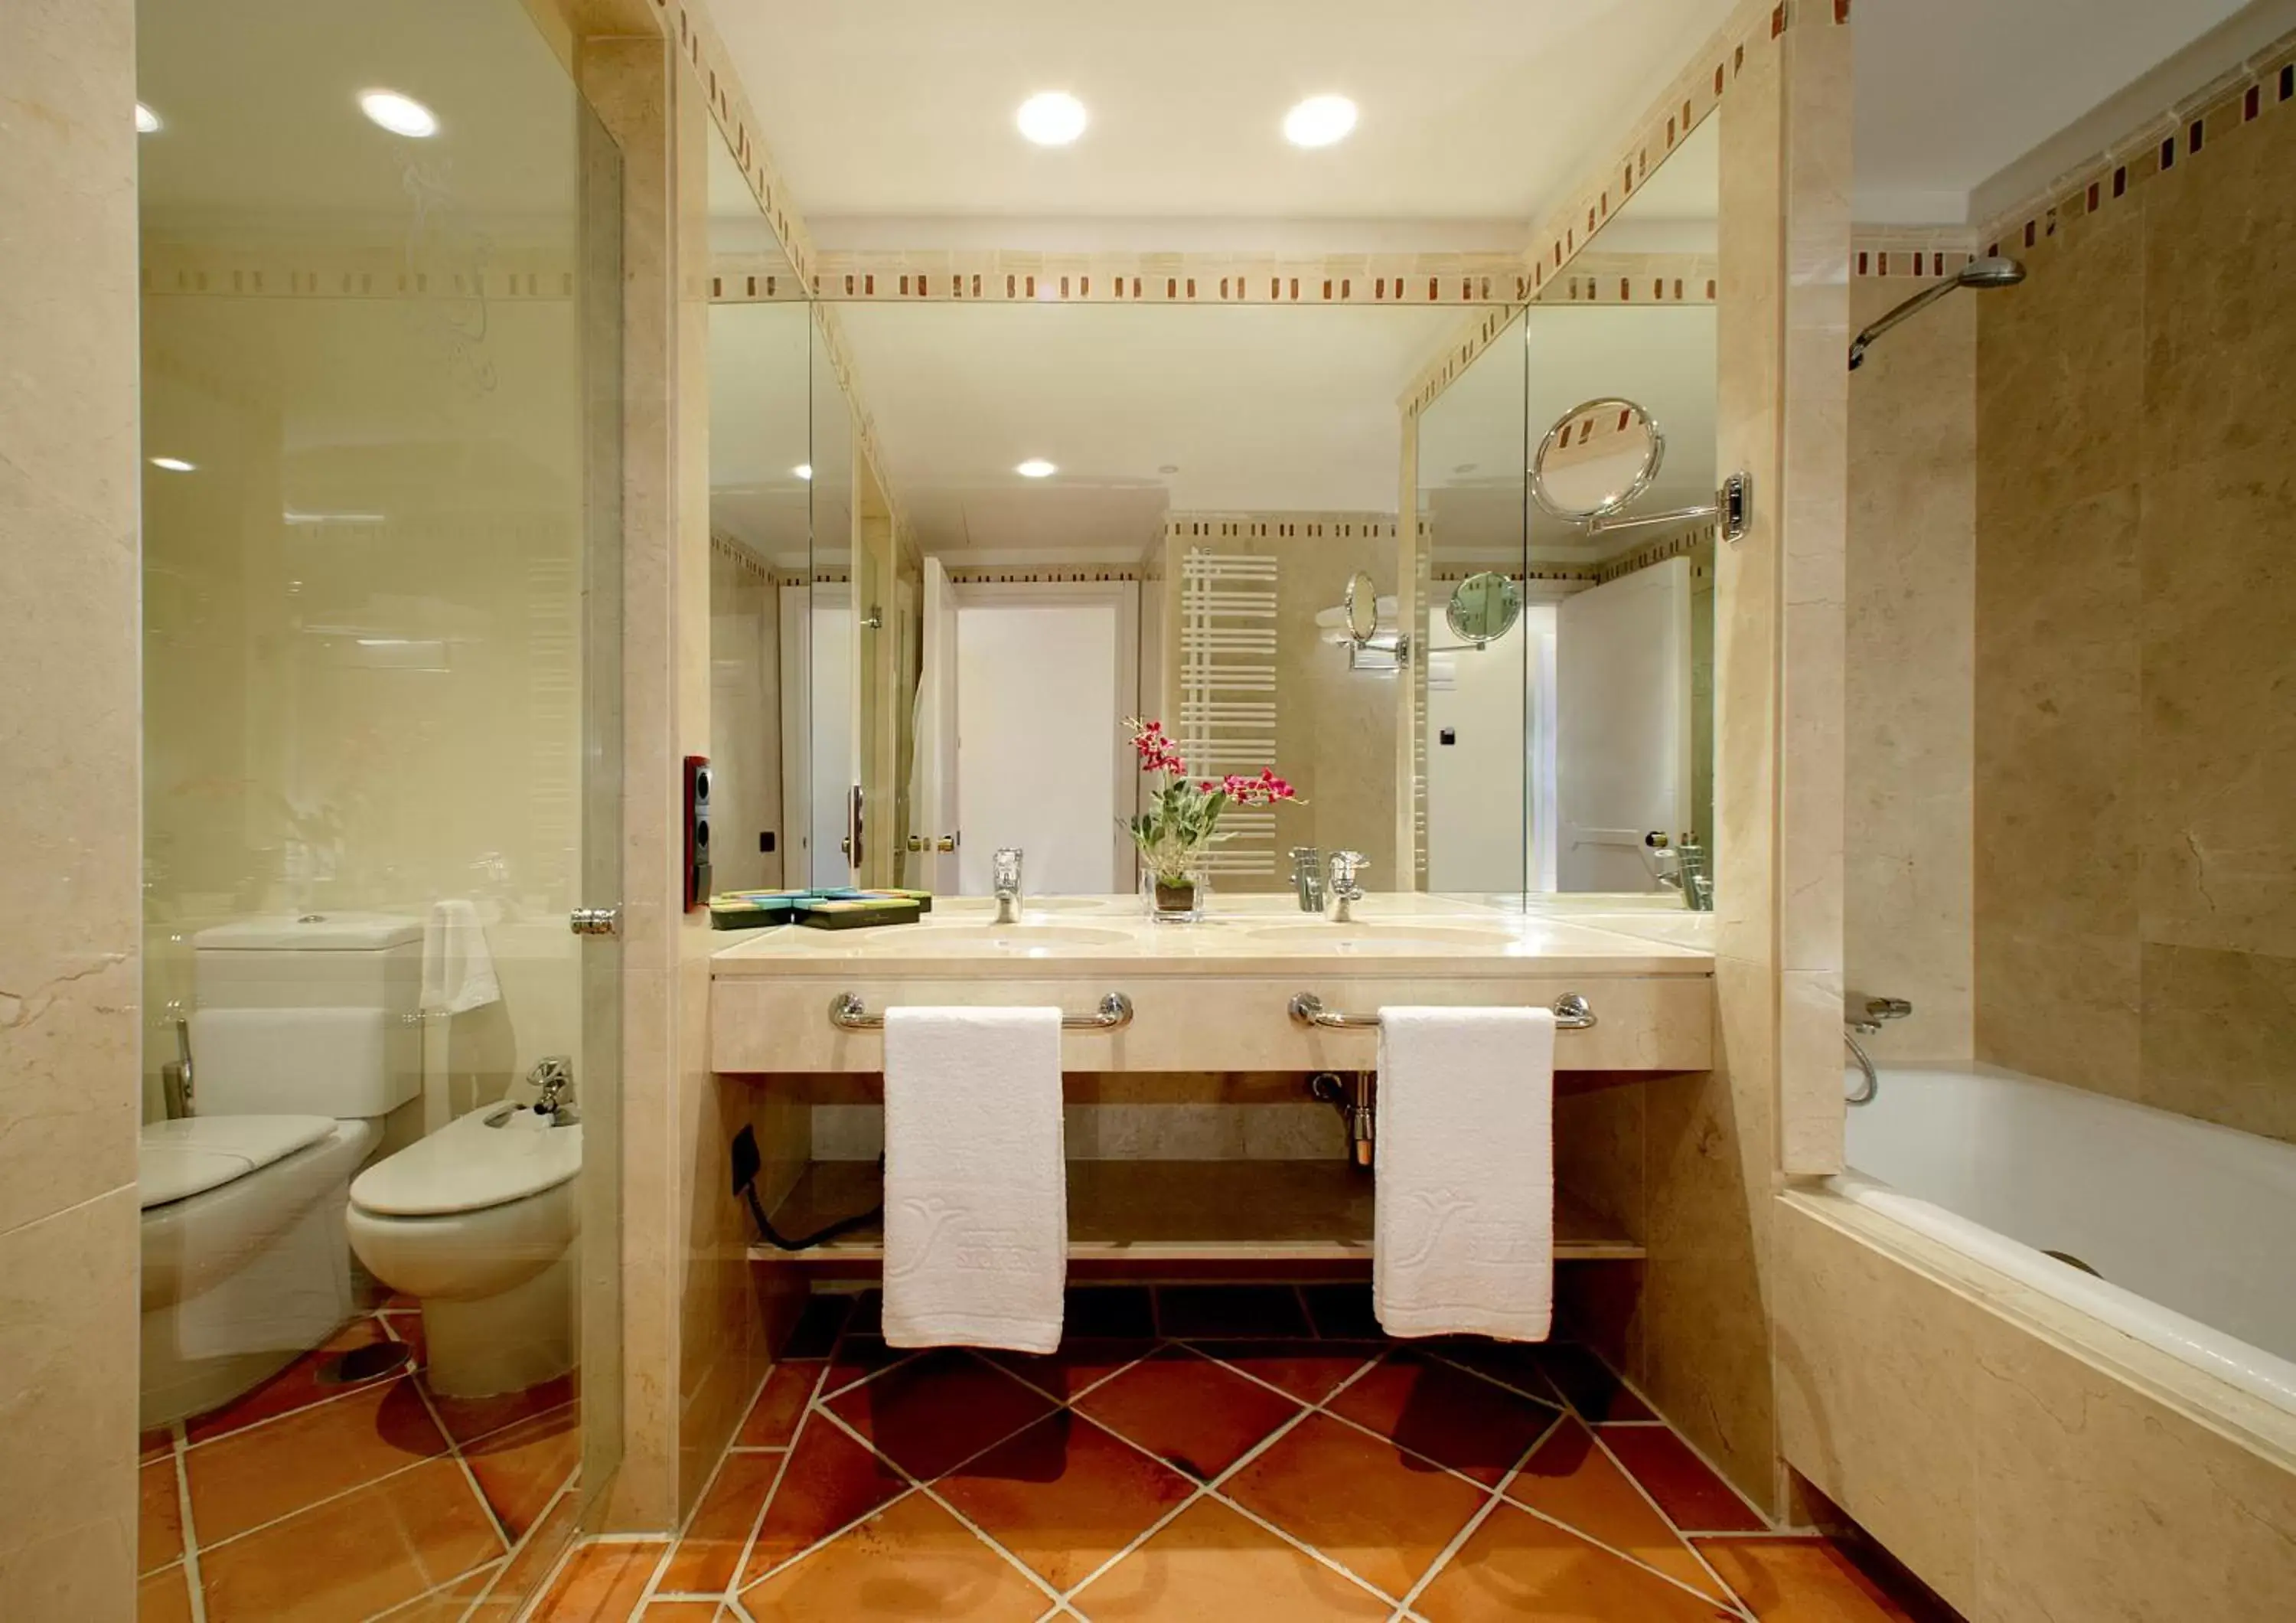 Bathroom in Hotel Cigarral el Bosque